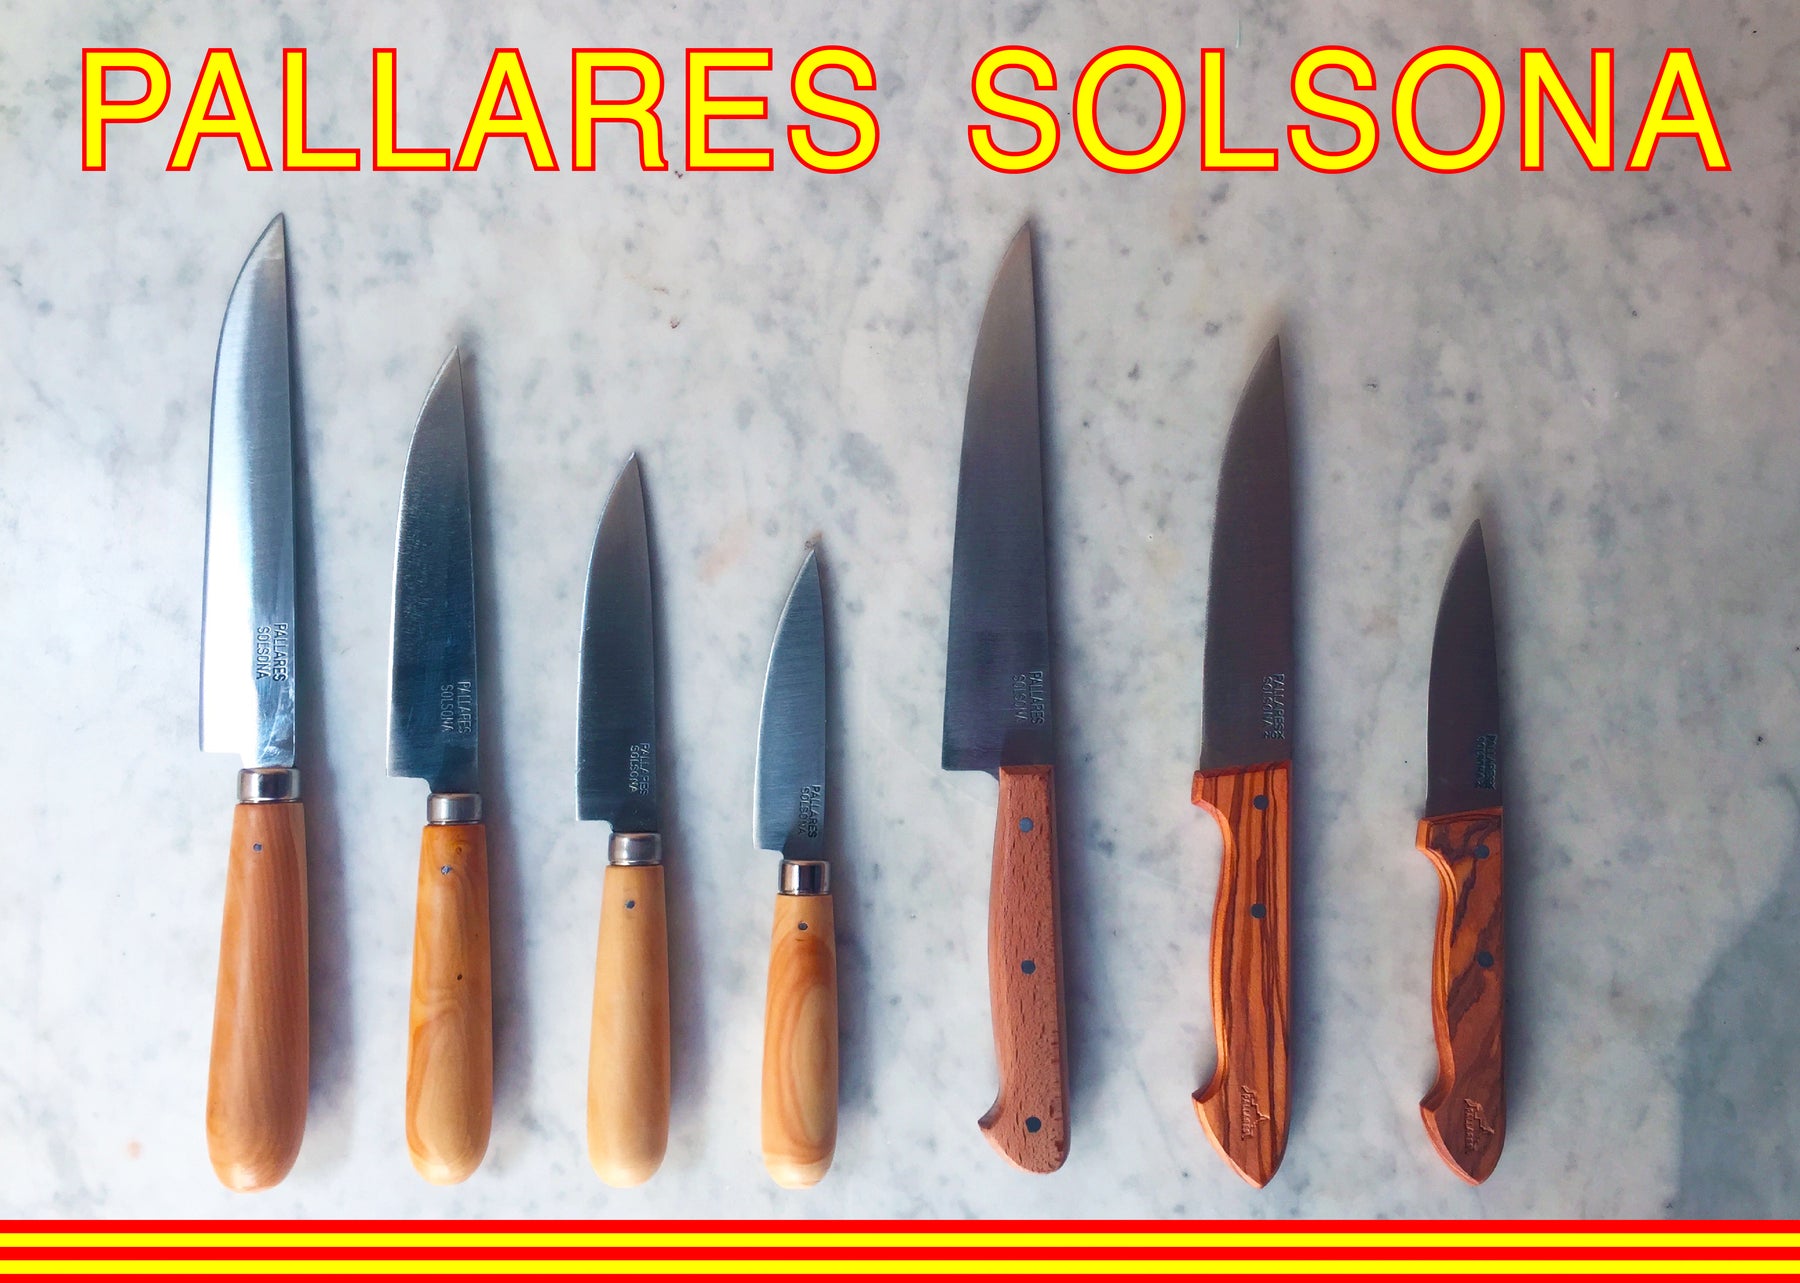 Pallares Solsona Wood handle Knives